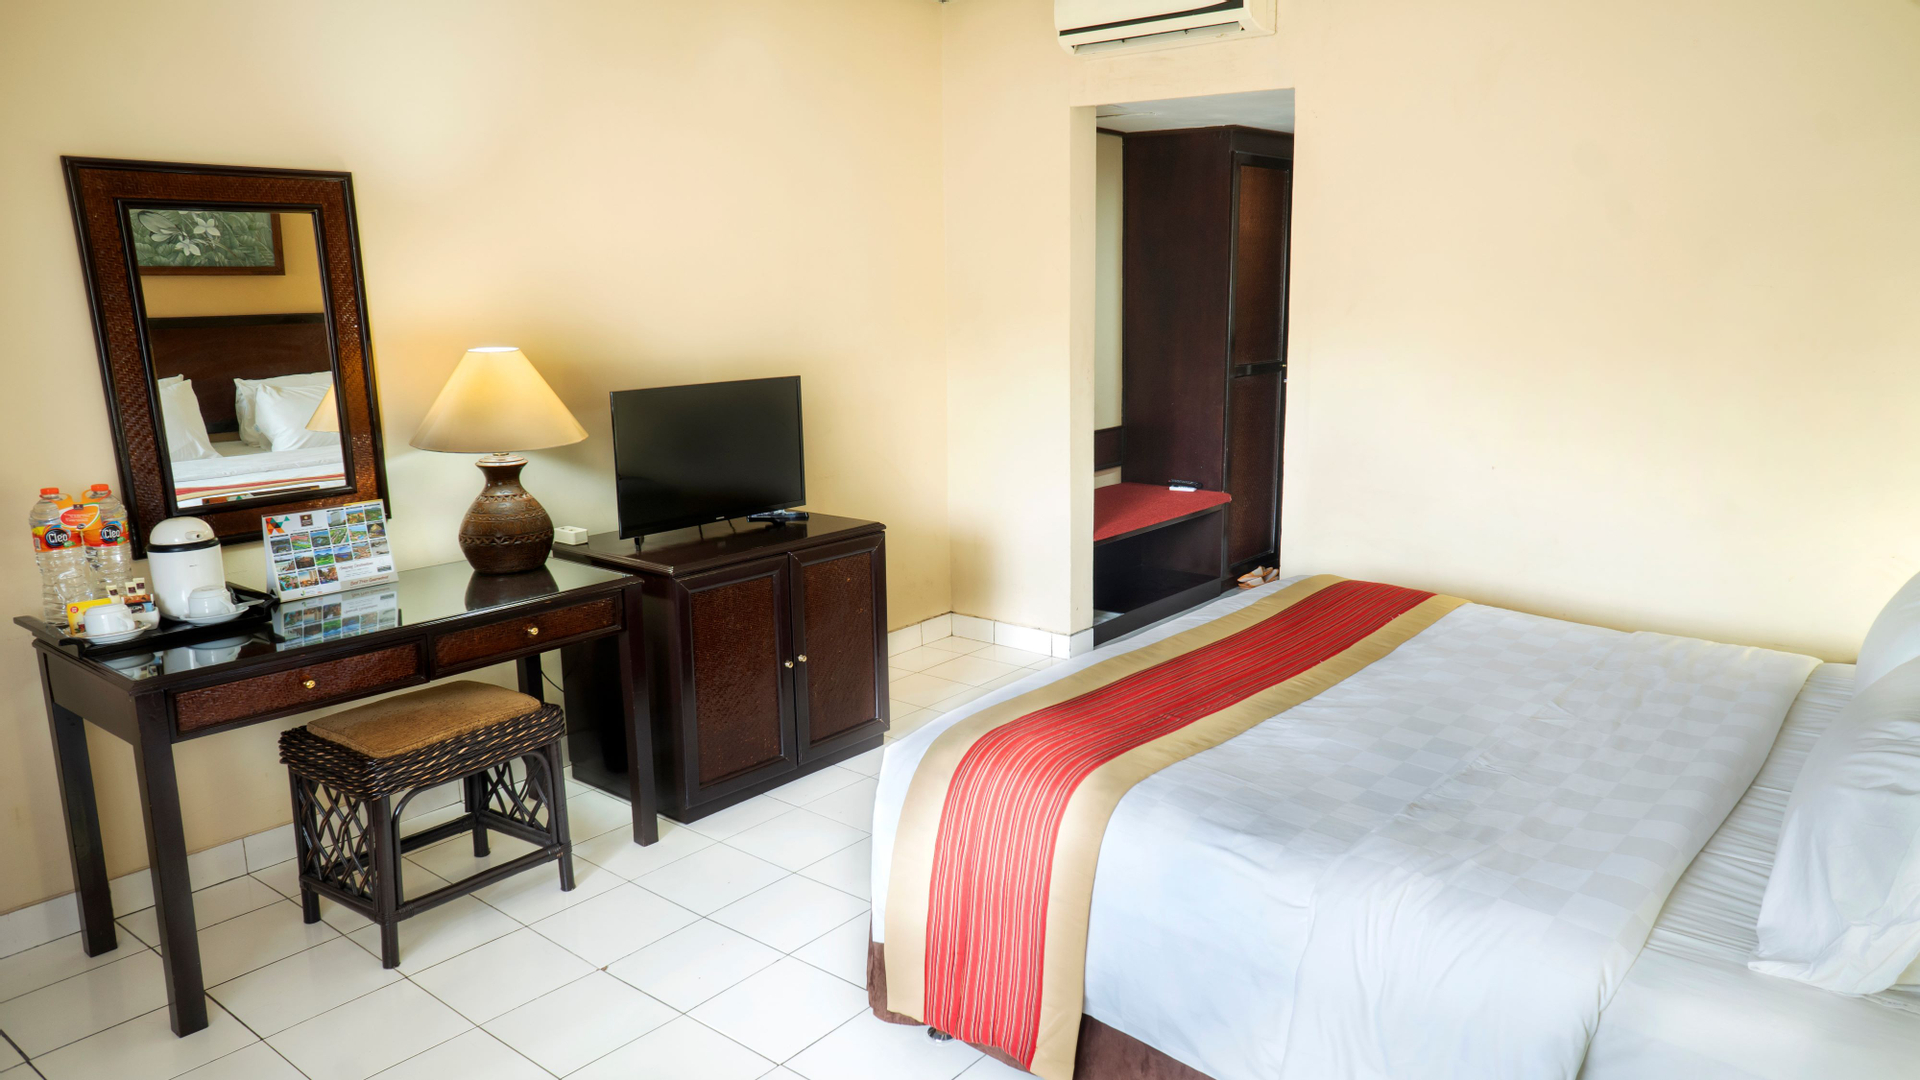 Bedroom 3, The Jayakarta Jogjakarta  Hotel & Spa, Yogyakarta